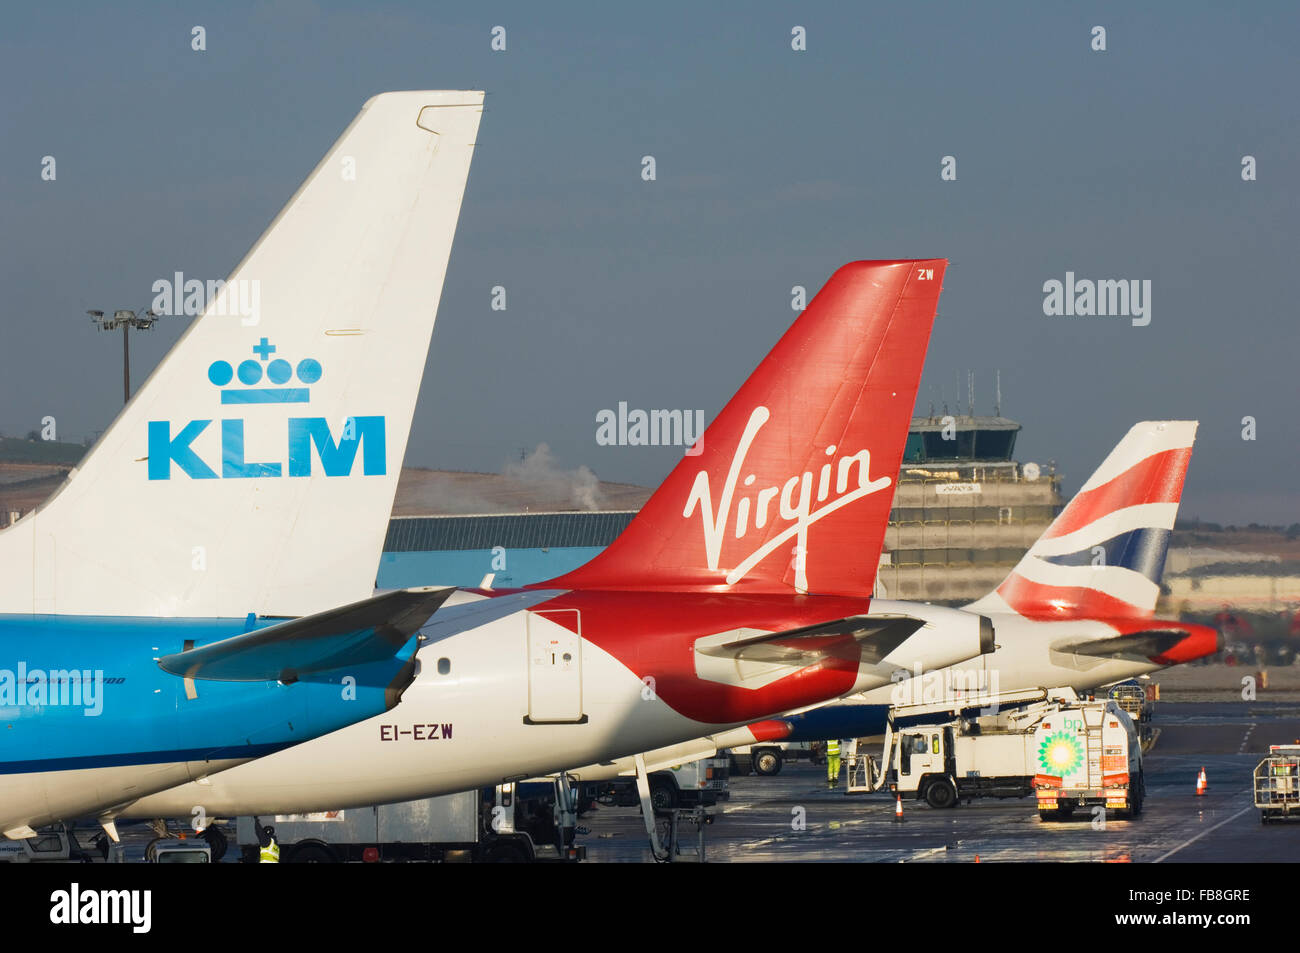 Queue d'avion montrant le marquage de différentes compagnies aériennes - l'aéroport d'Aberdeen, en Écosse. Banque D'Images